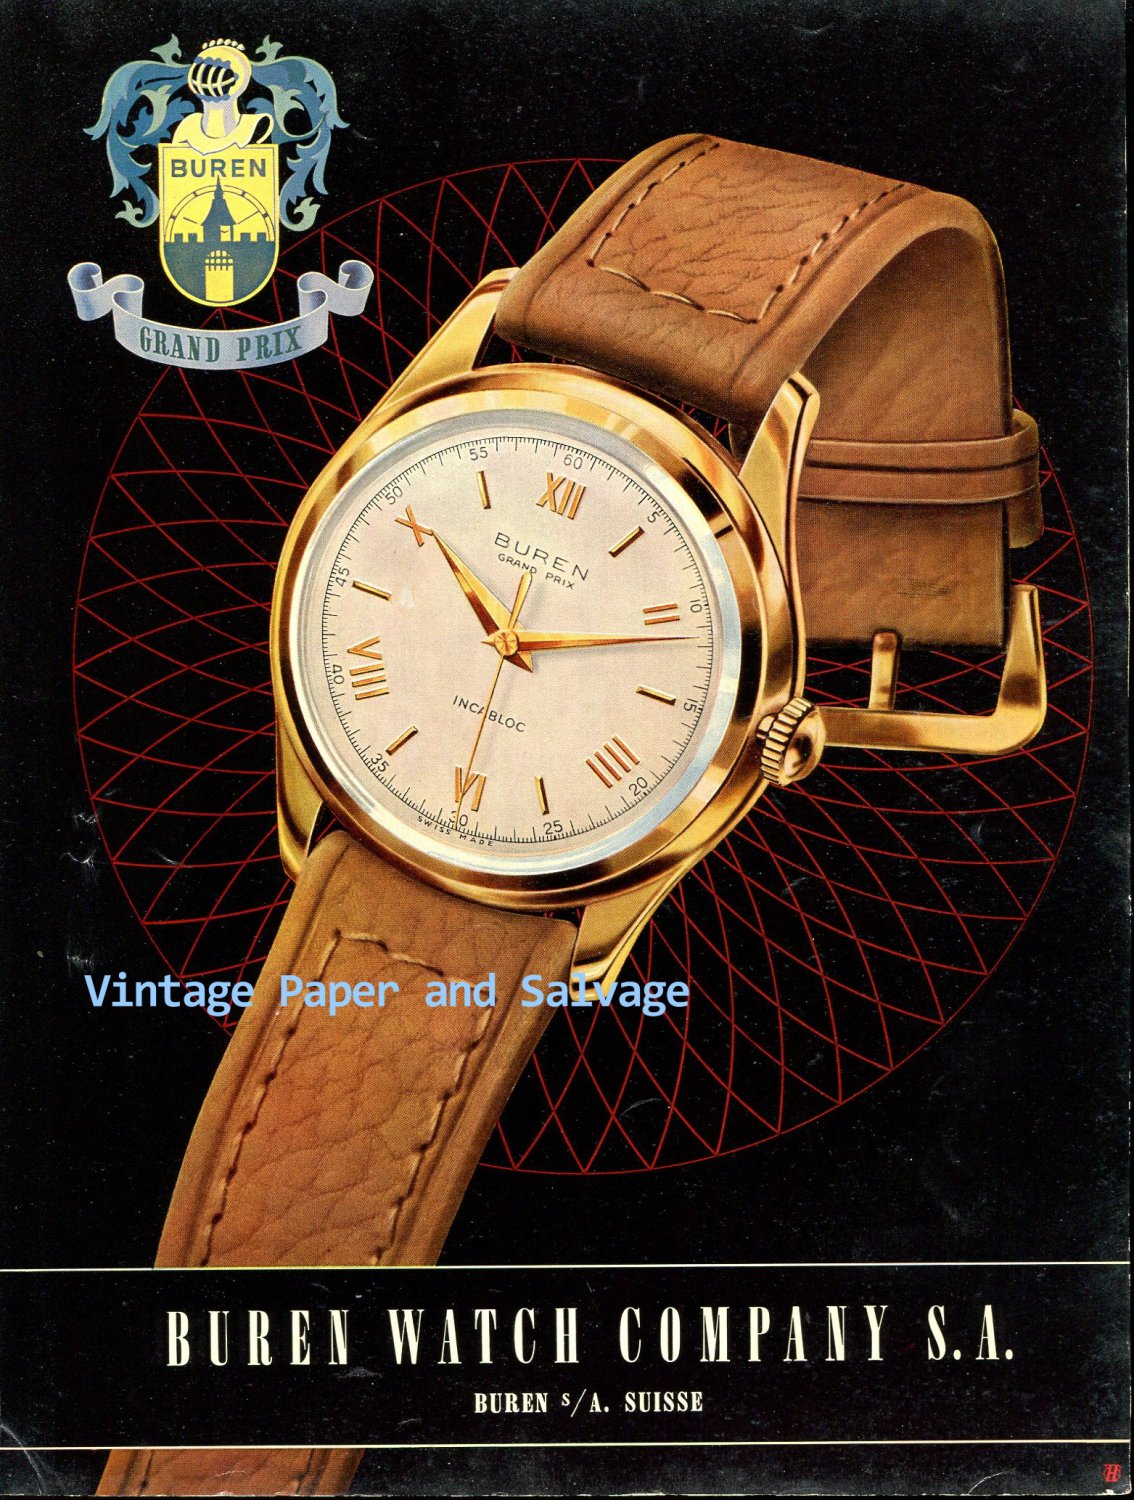 Vintage 1952 Buren Grand Prix Watch Advert Switzerland Original 1950s Swiss Print Ad Suisse